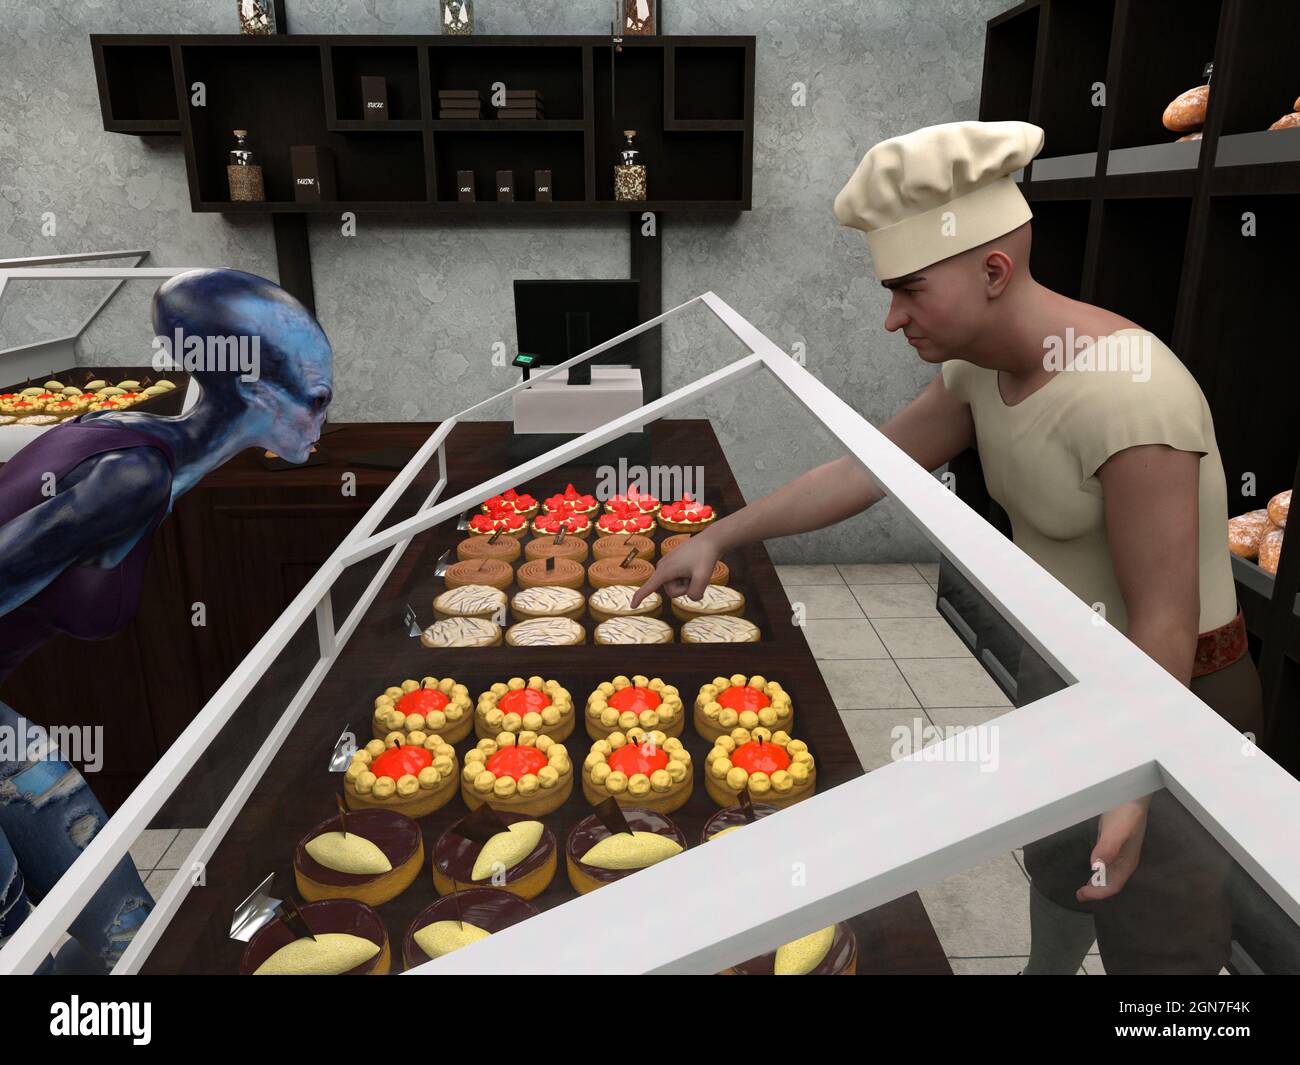 Vue rapprochée illustration 3d d'un boulanger portant une chemise et un chapeau blanc pointant vers une pâtisserie pour un client étranger dans une boulangerie. Banque D'Images